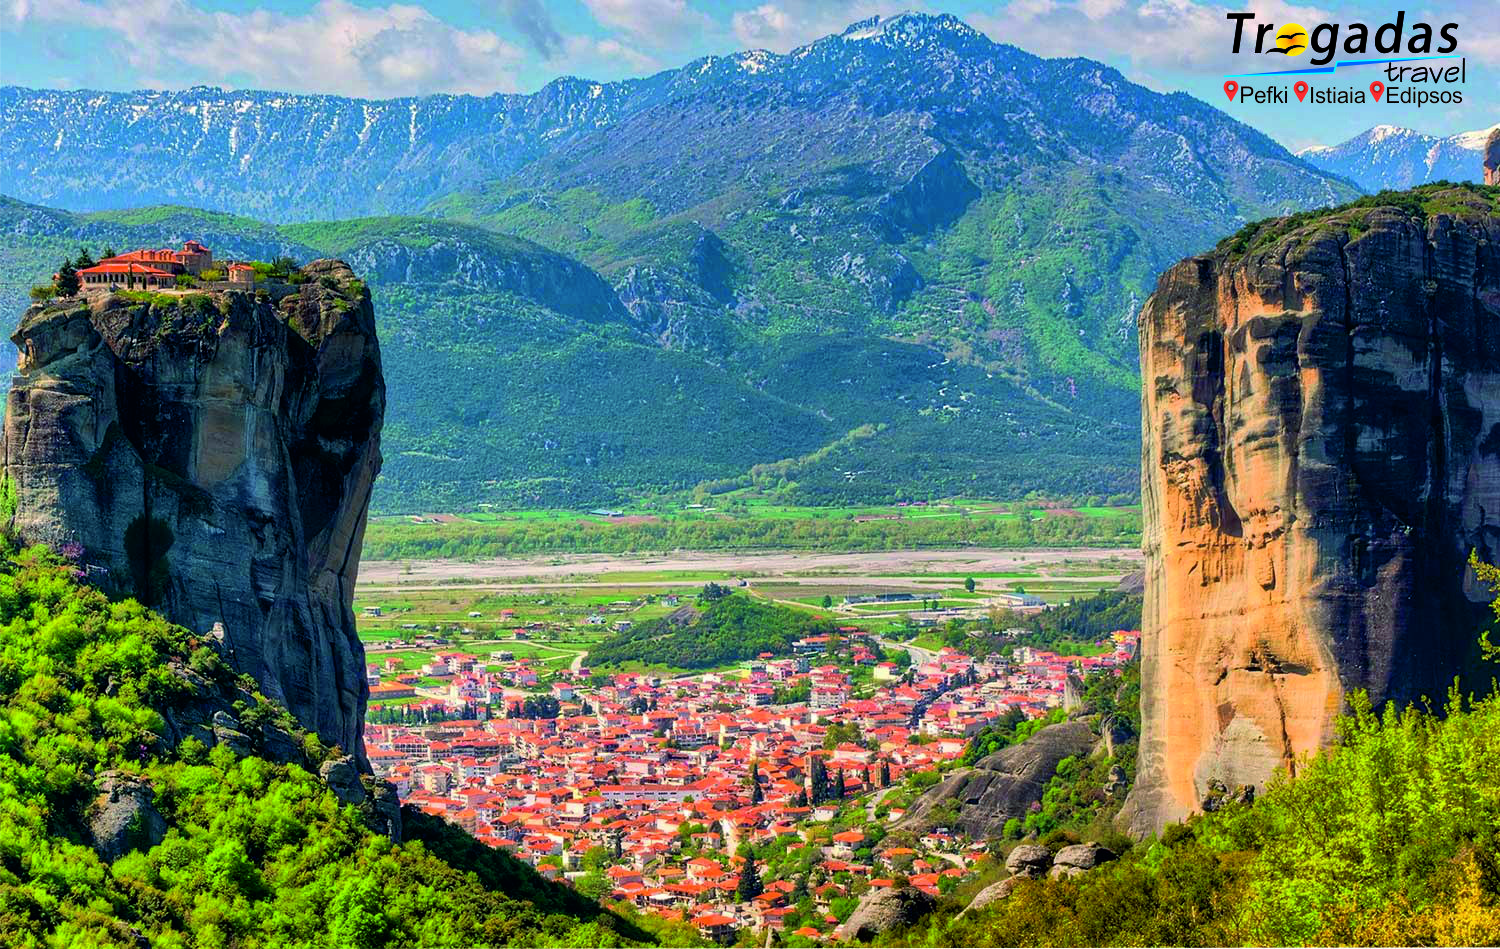 Meteora Tour Monasteries Summer Excursion From Pefki Edipsos